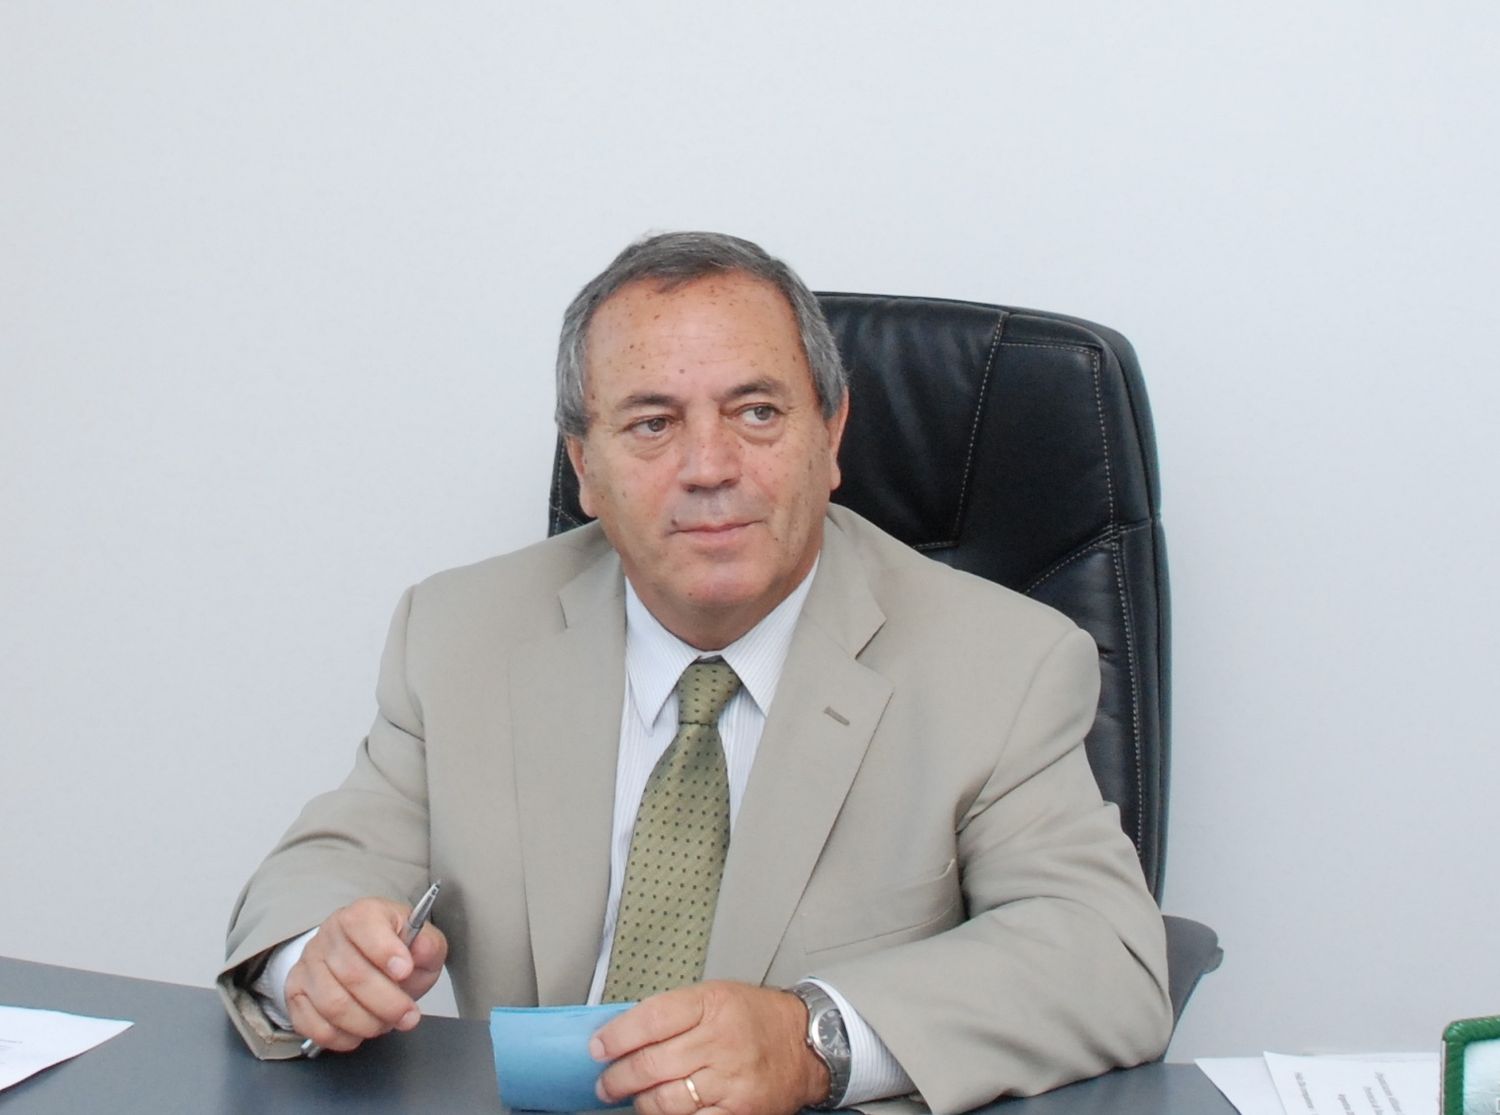 Roberto Passo, nuevo vicepresidente del PJ en Tigre: "El camino es la unidad del Peronismo"